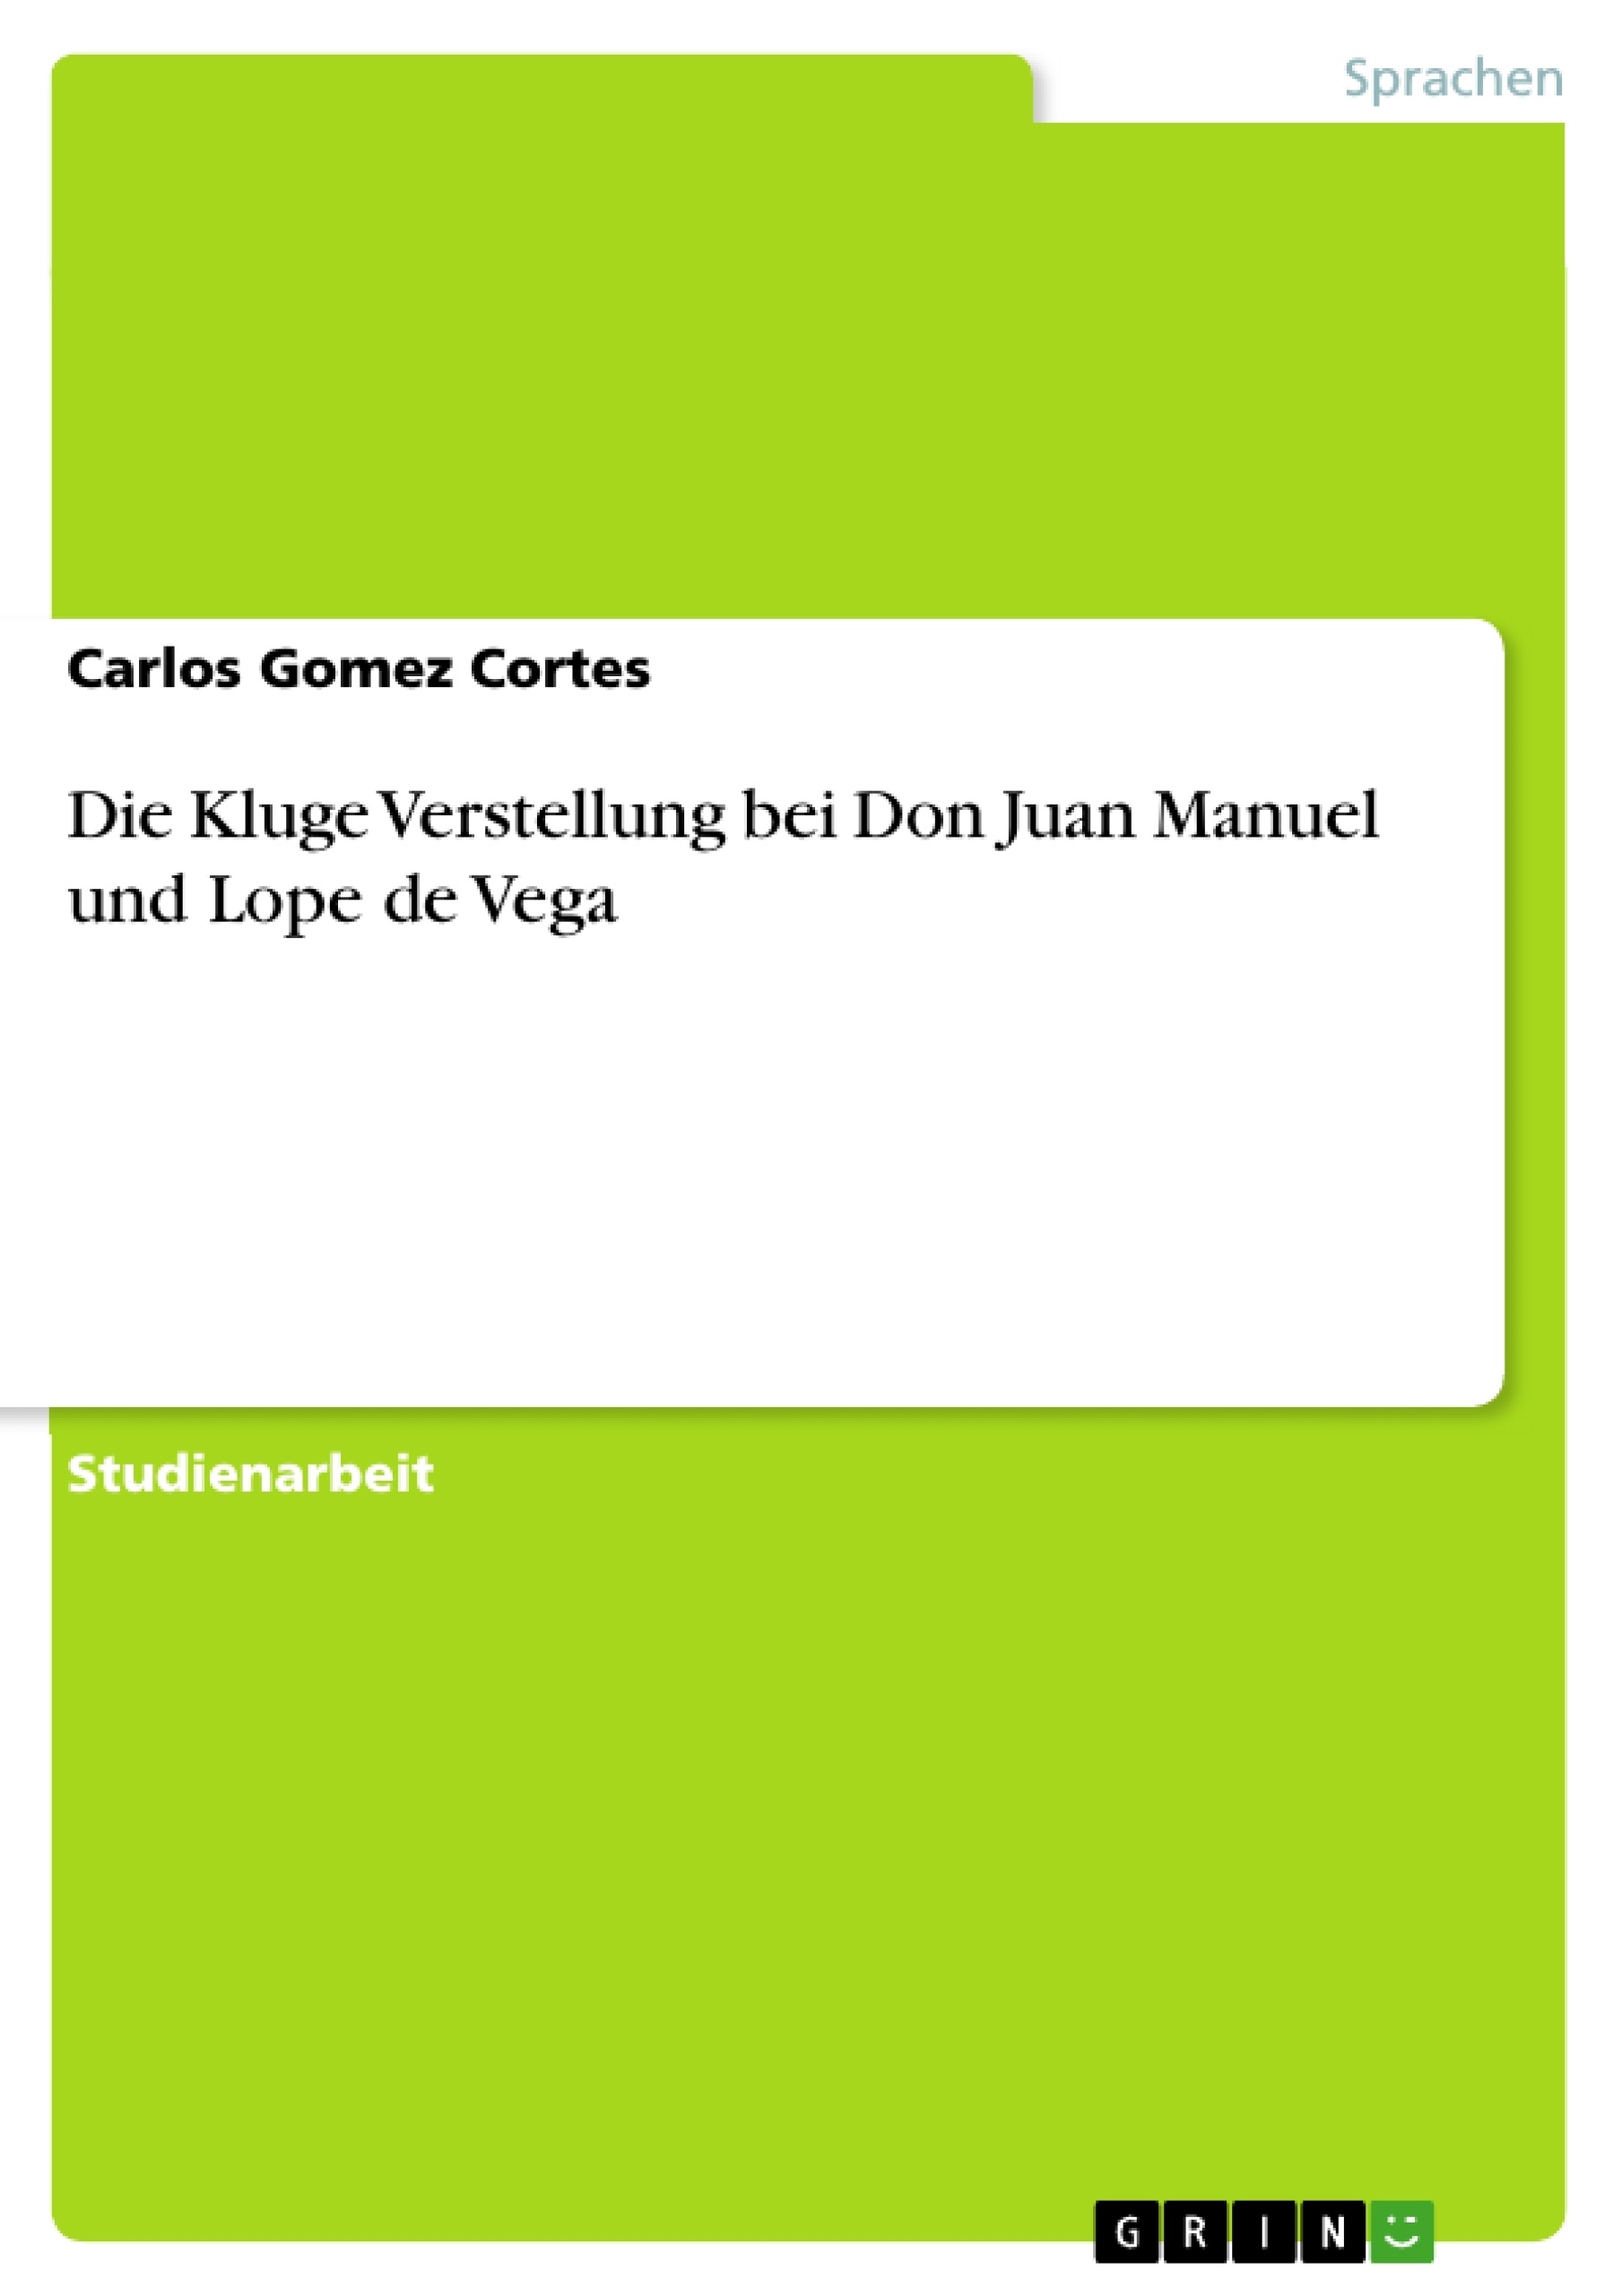 Title: Die Kluge Verstellung bei Don Juan Manuel und Lope de Vega